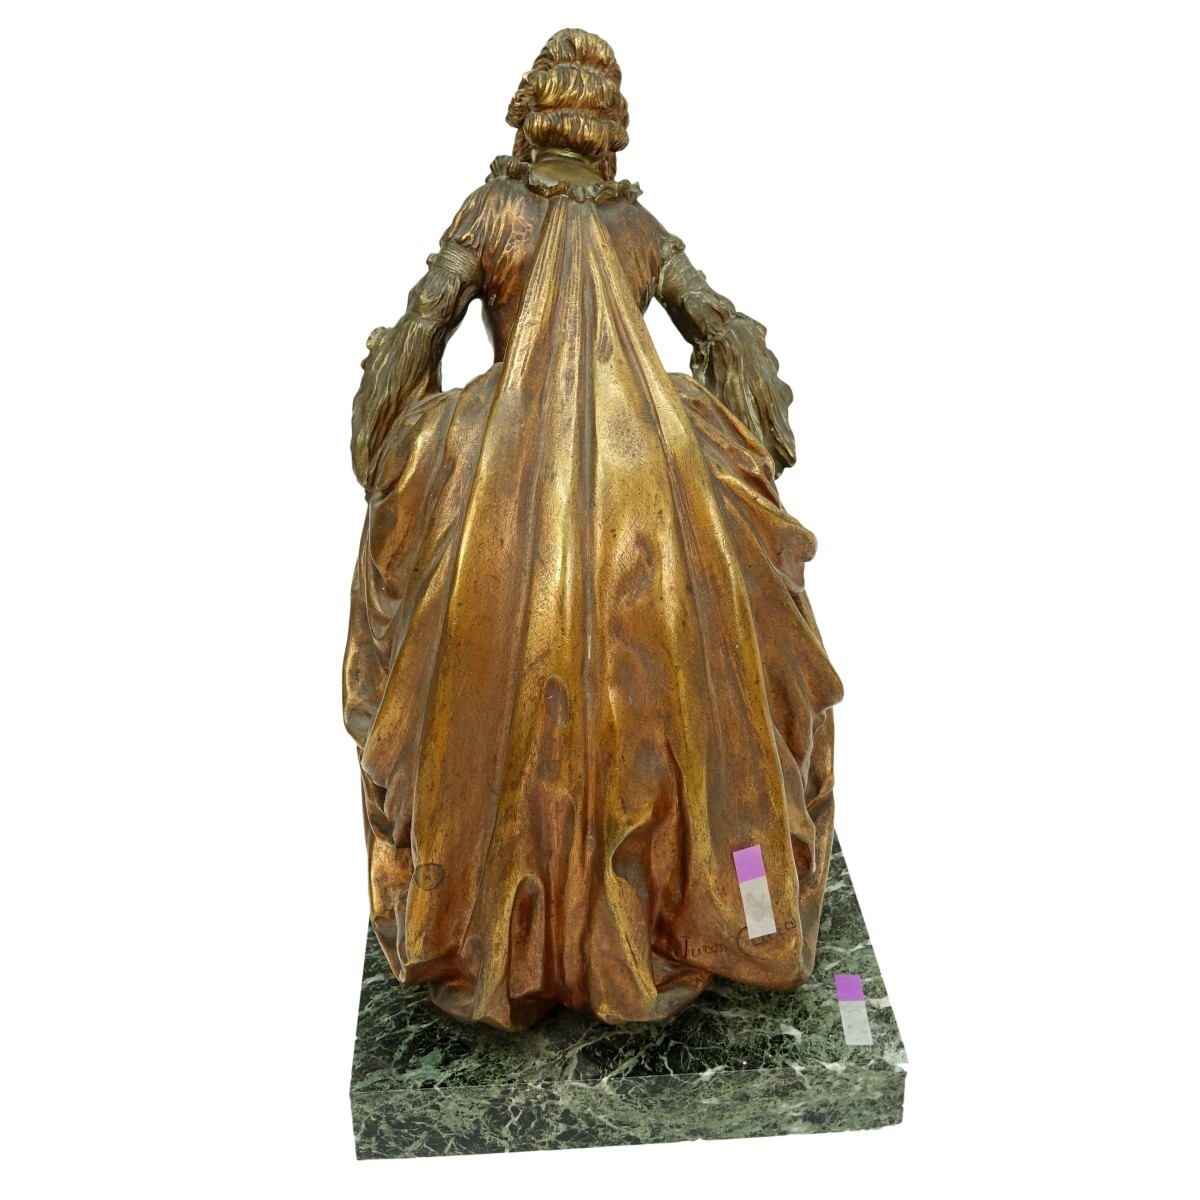 Juan Clara (1875-1958) Bronze "Lady" Dancing